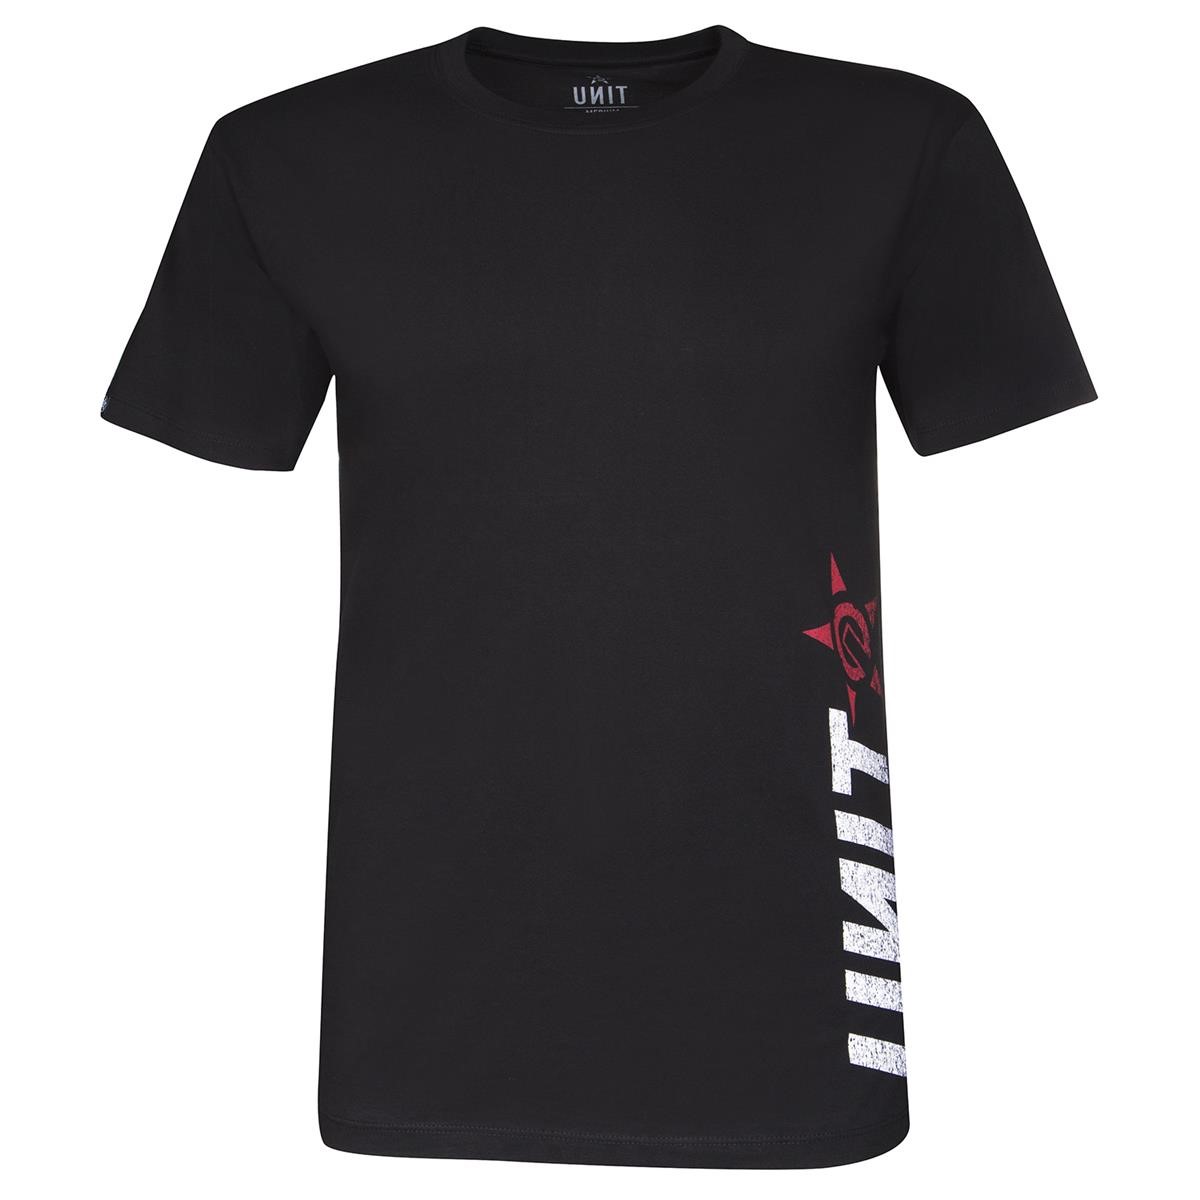 Unit T-Shirt Primitive Black